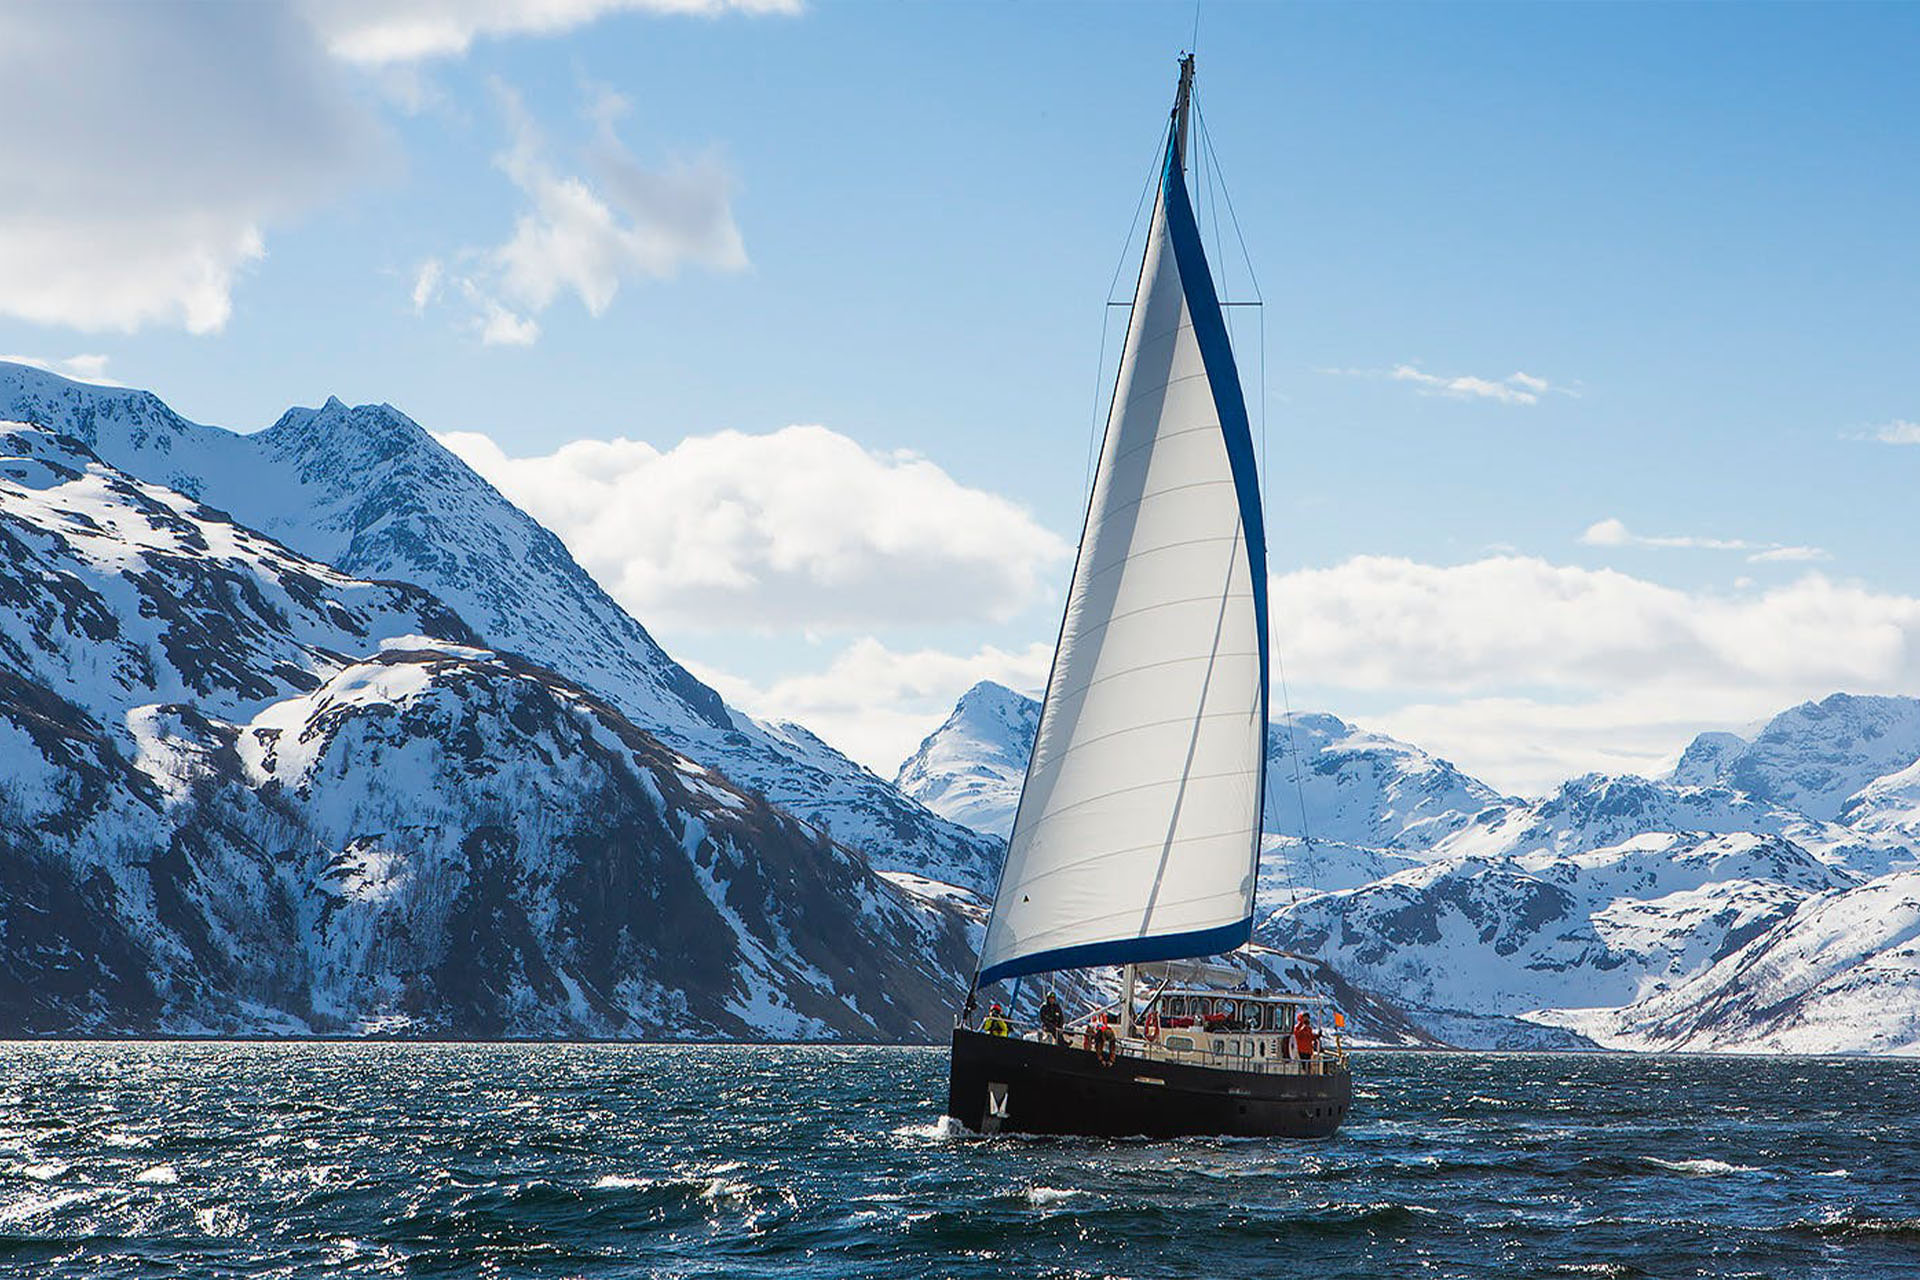 Valiente Glacier sailing